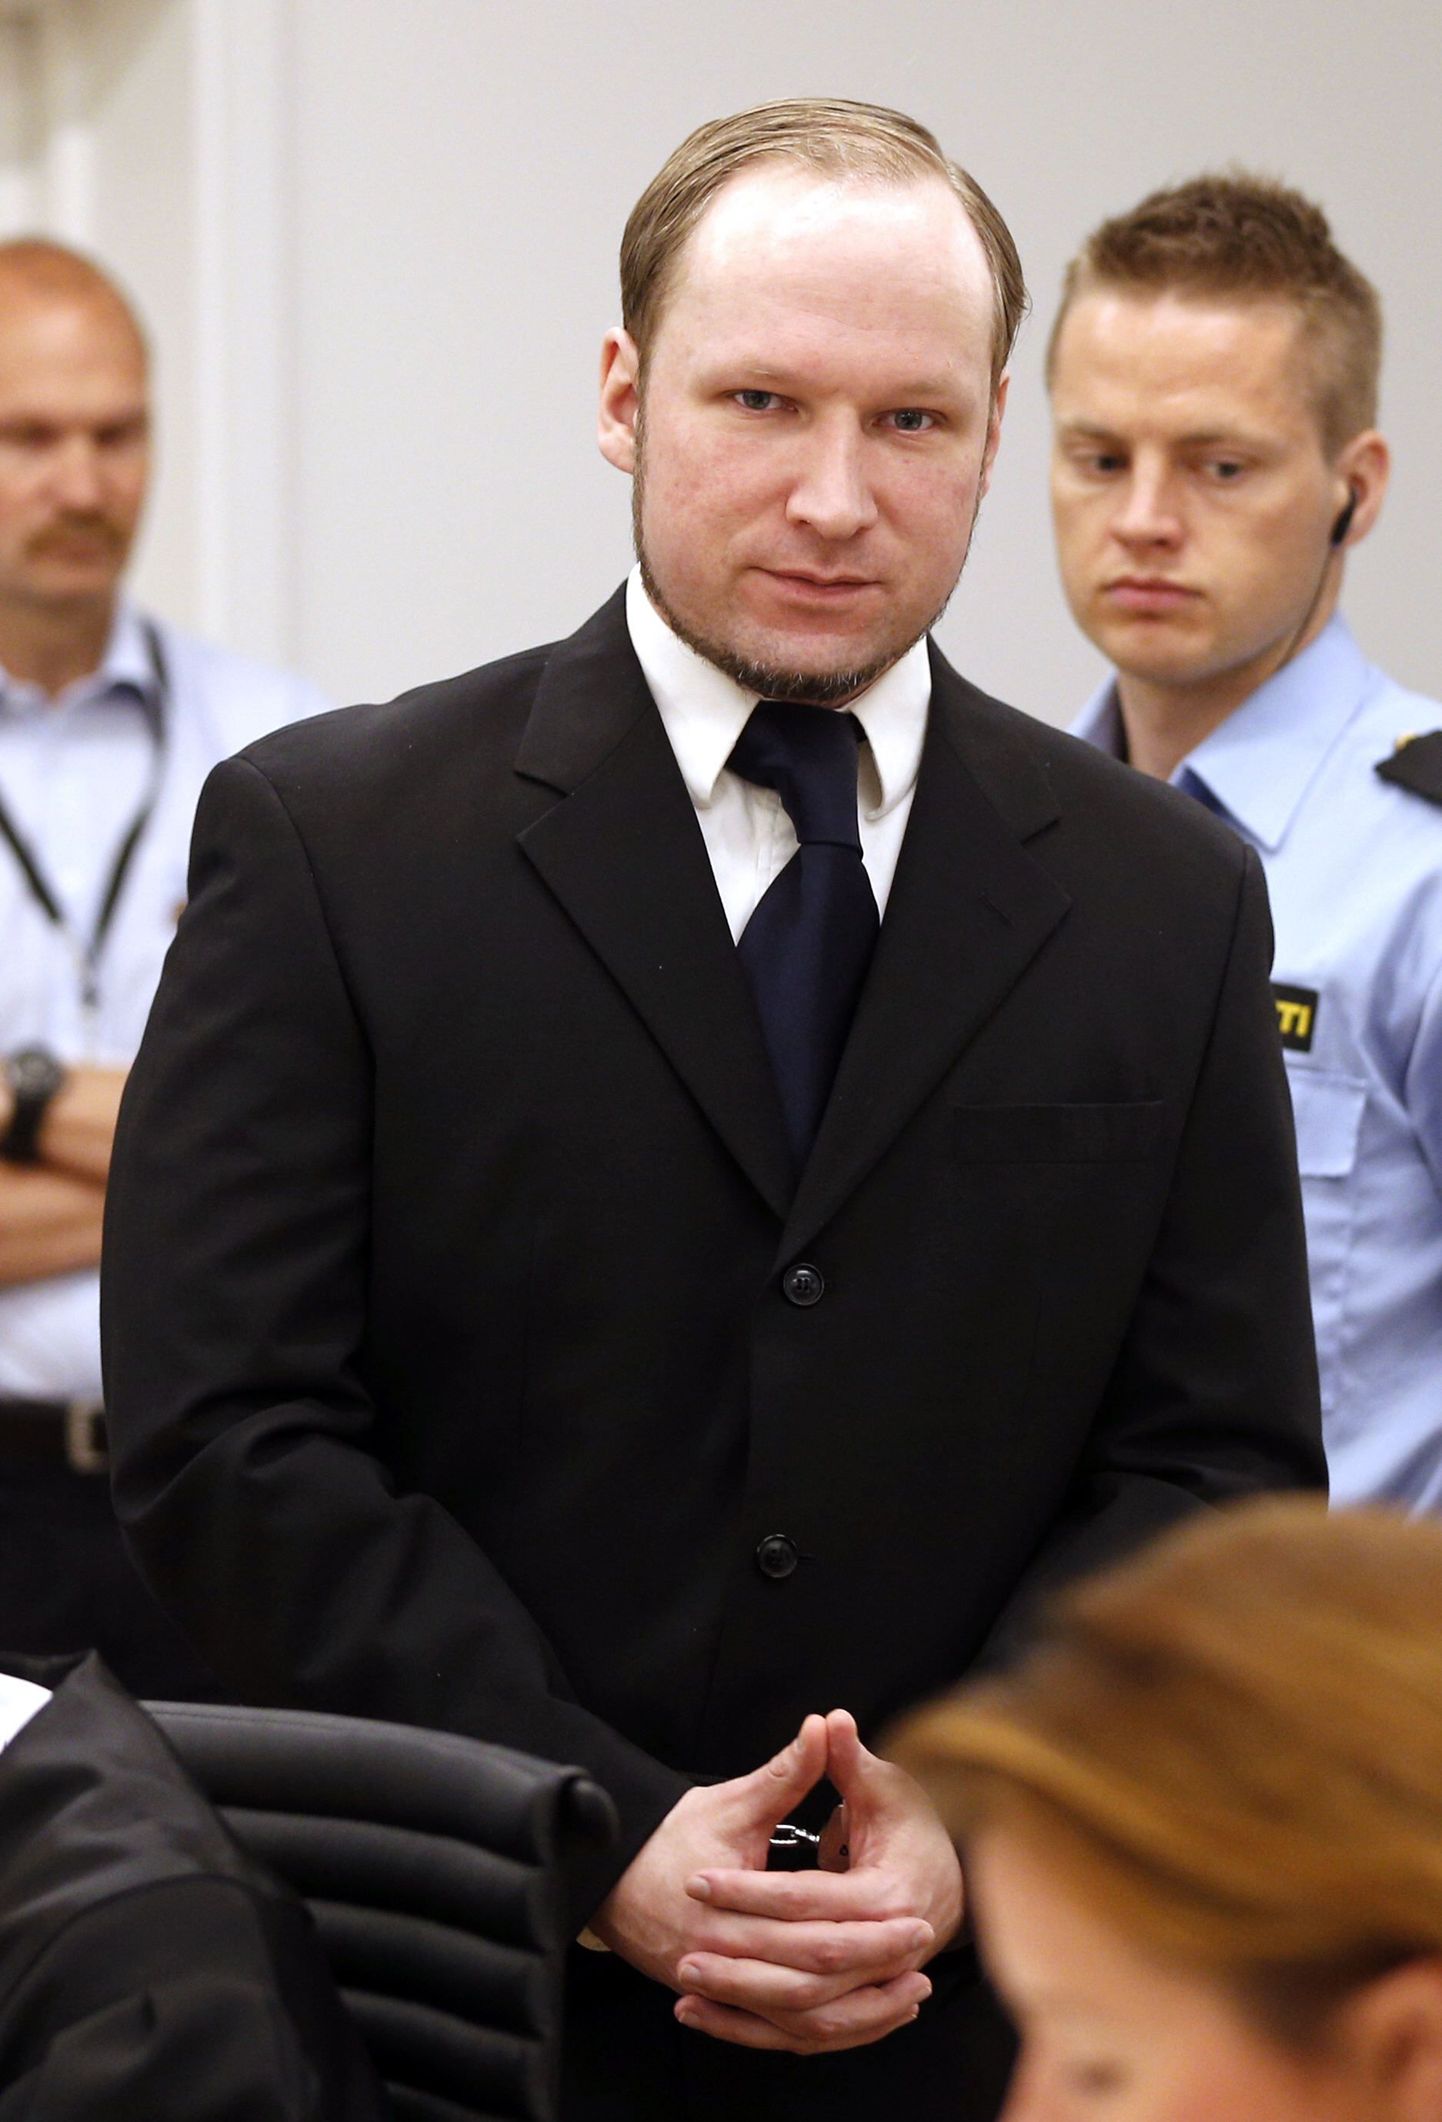 Norra massimõrvar Anders Behring Breivik täna Oslo kohtus.